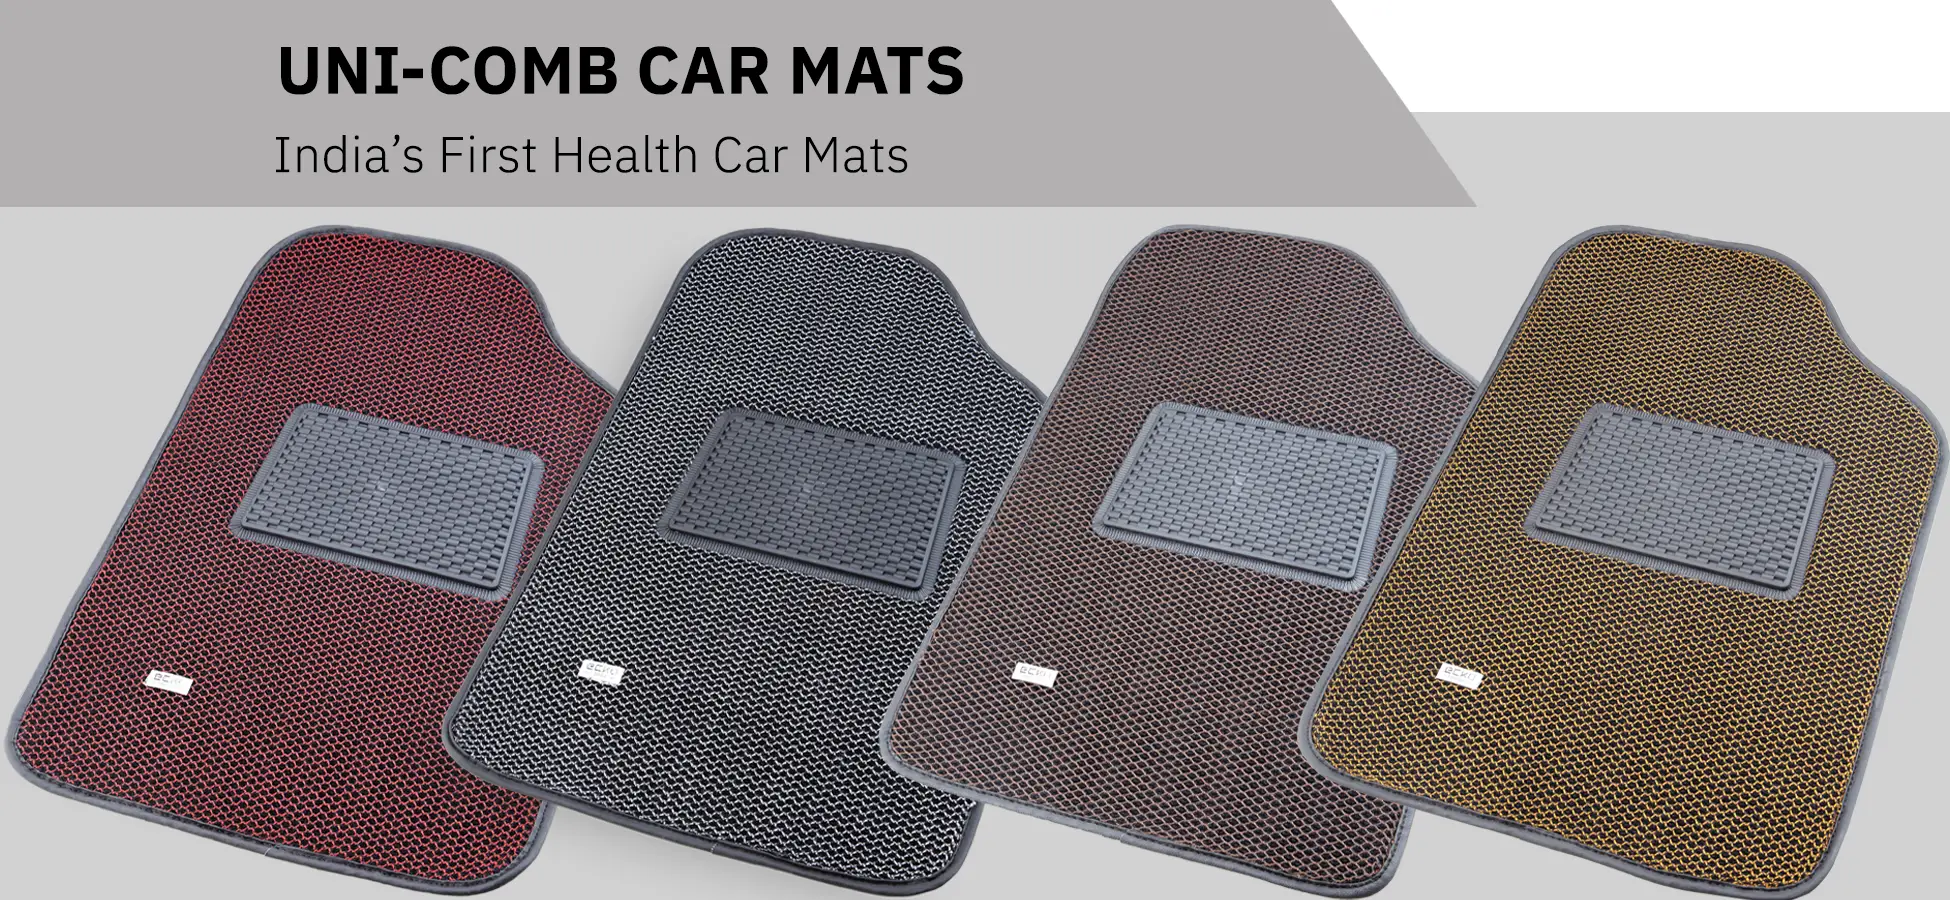 top gear uni-comb mats - versatile car floor mats